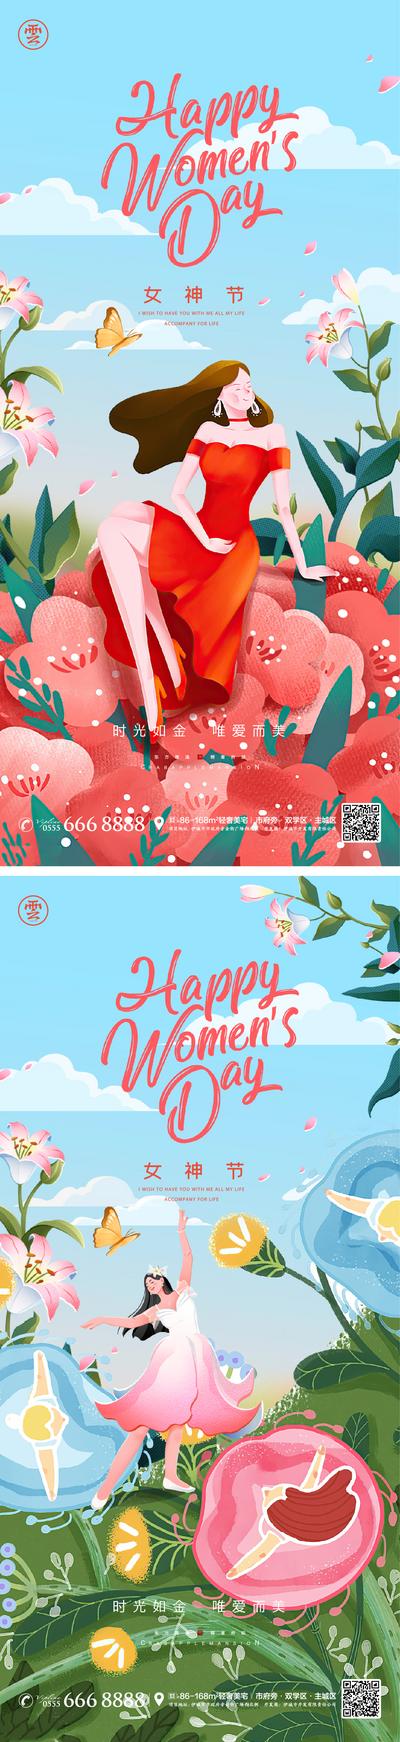 南门网 38妇女节女神节系列海报